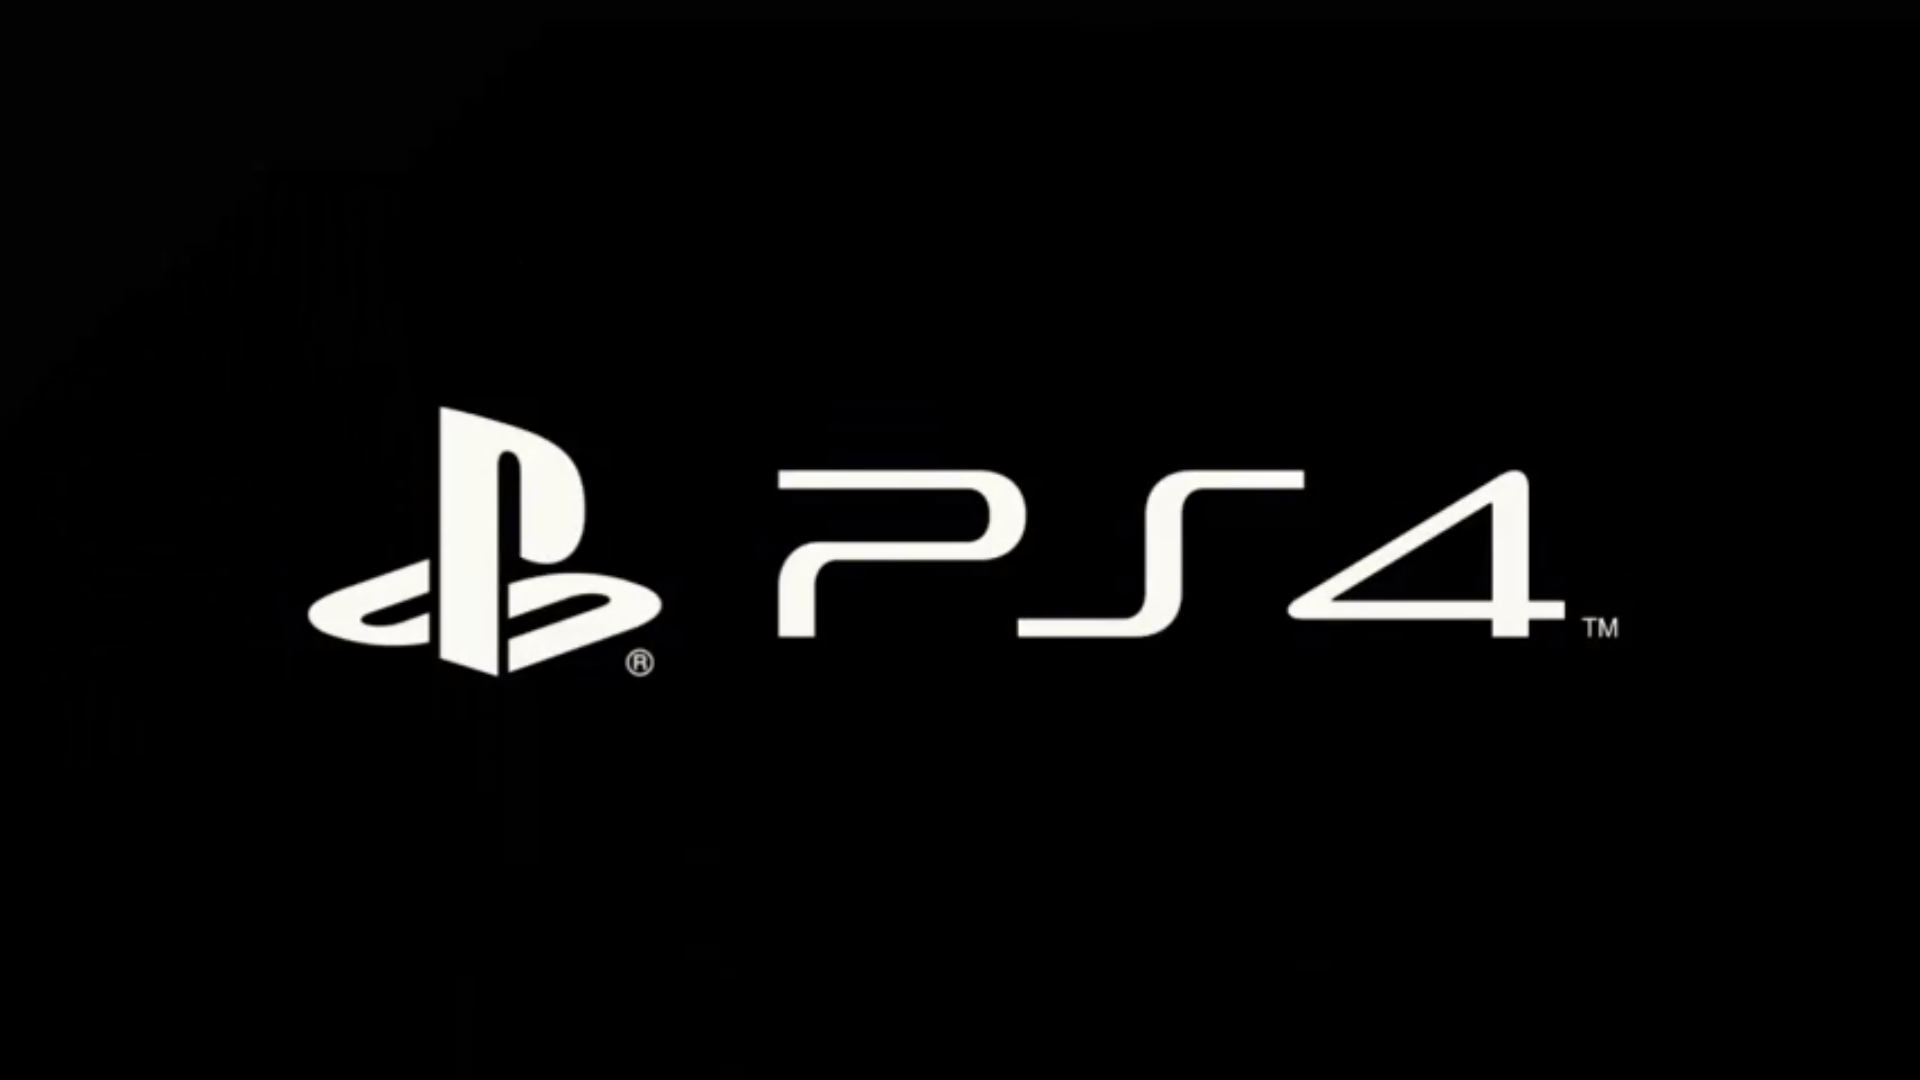 Sony Ha Presentado Su Nueva Plataforma Playstation Durante La